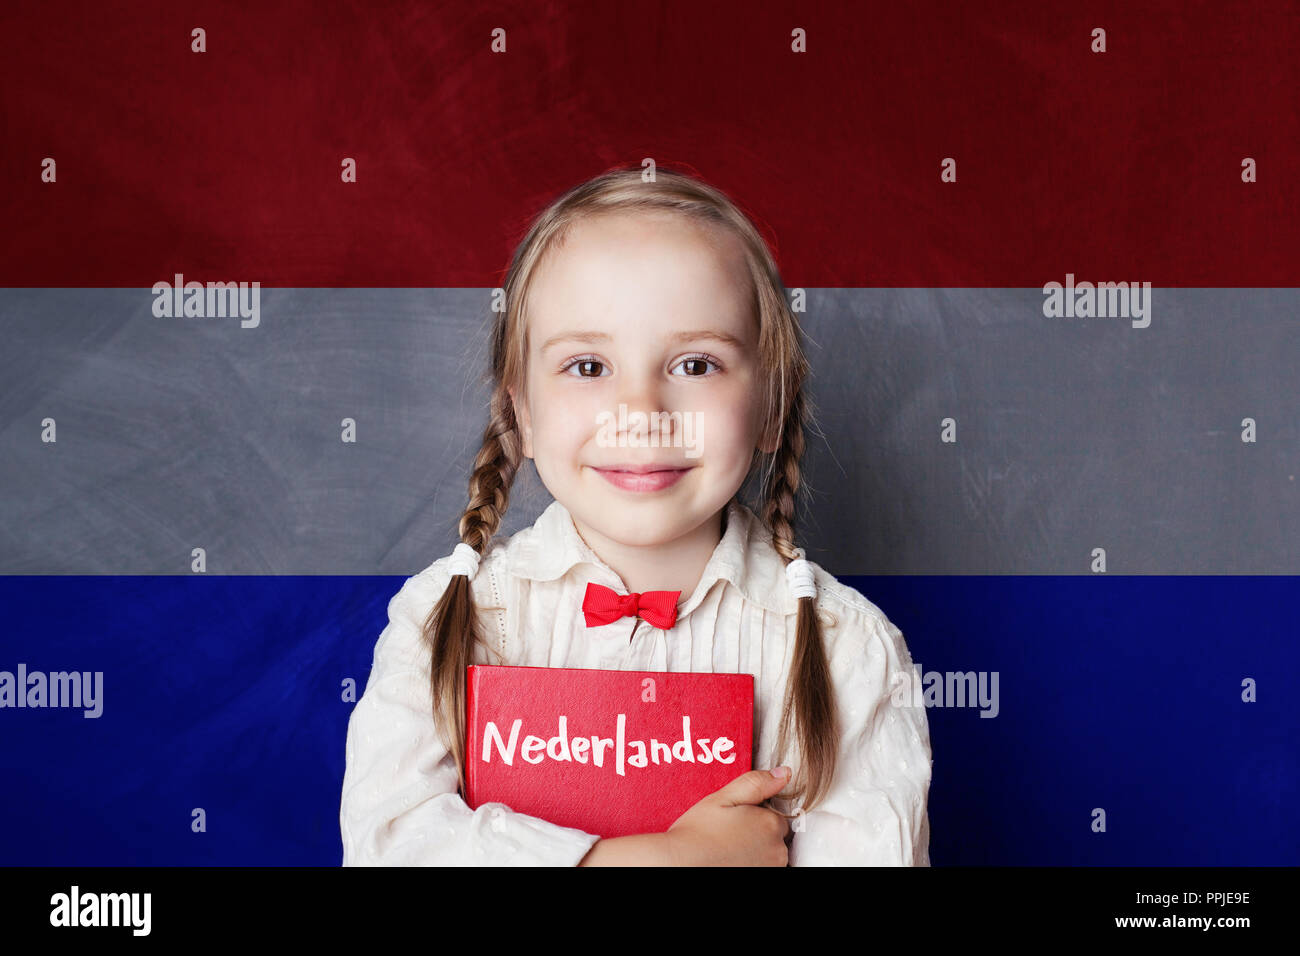 Learning netherlandish language hi-res stock photography and images - Alamy